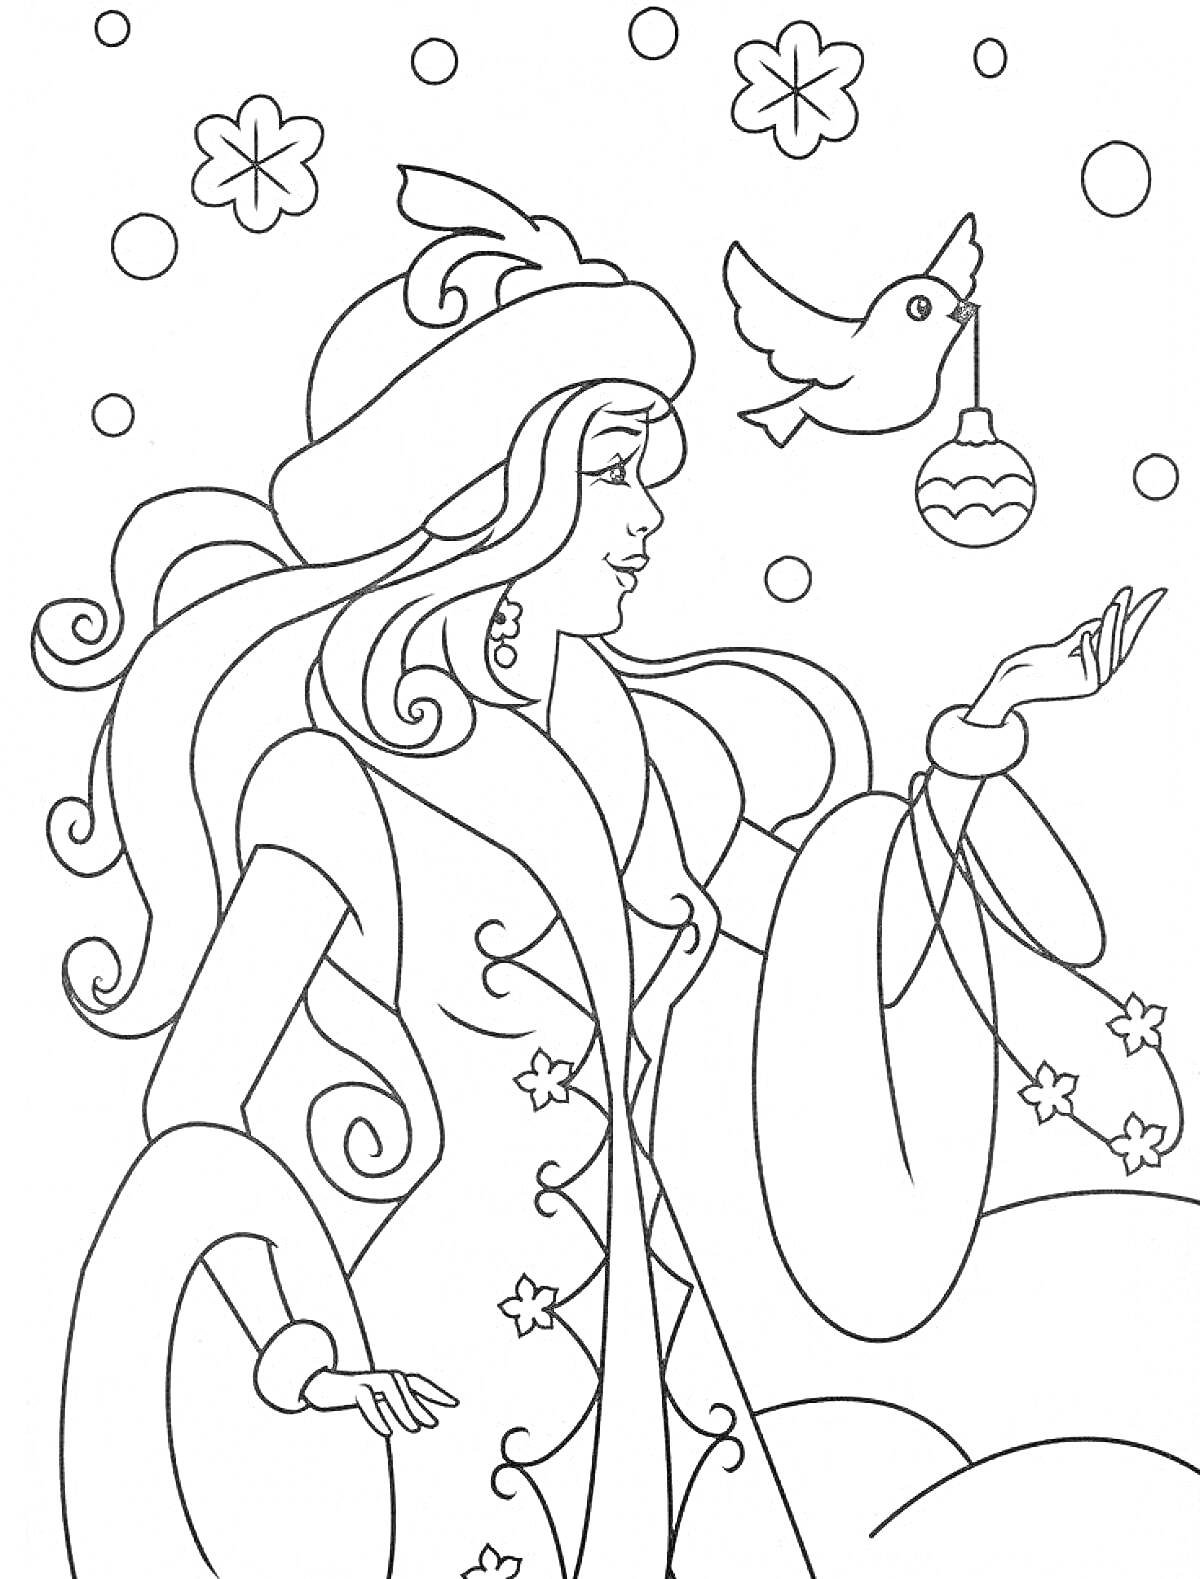 Раскраска Снегурочка с птицей, держащей ёлочное украшение, зимние цветы и снежинки